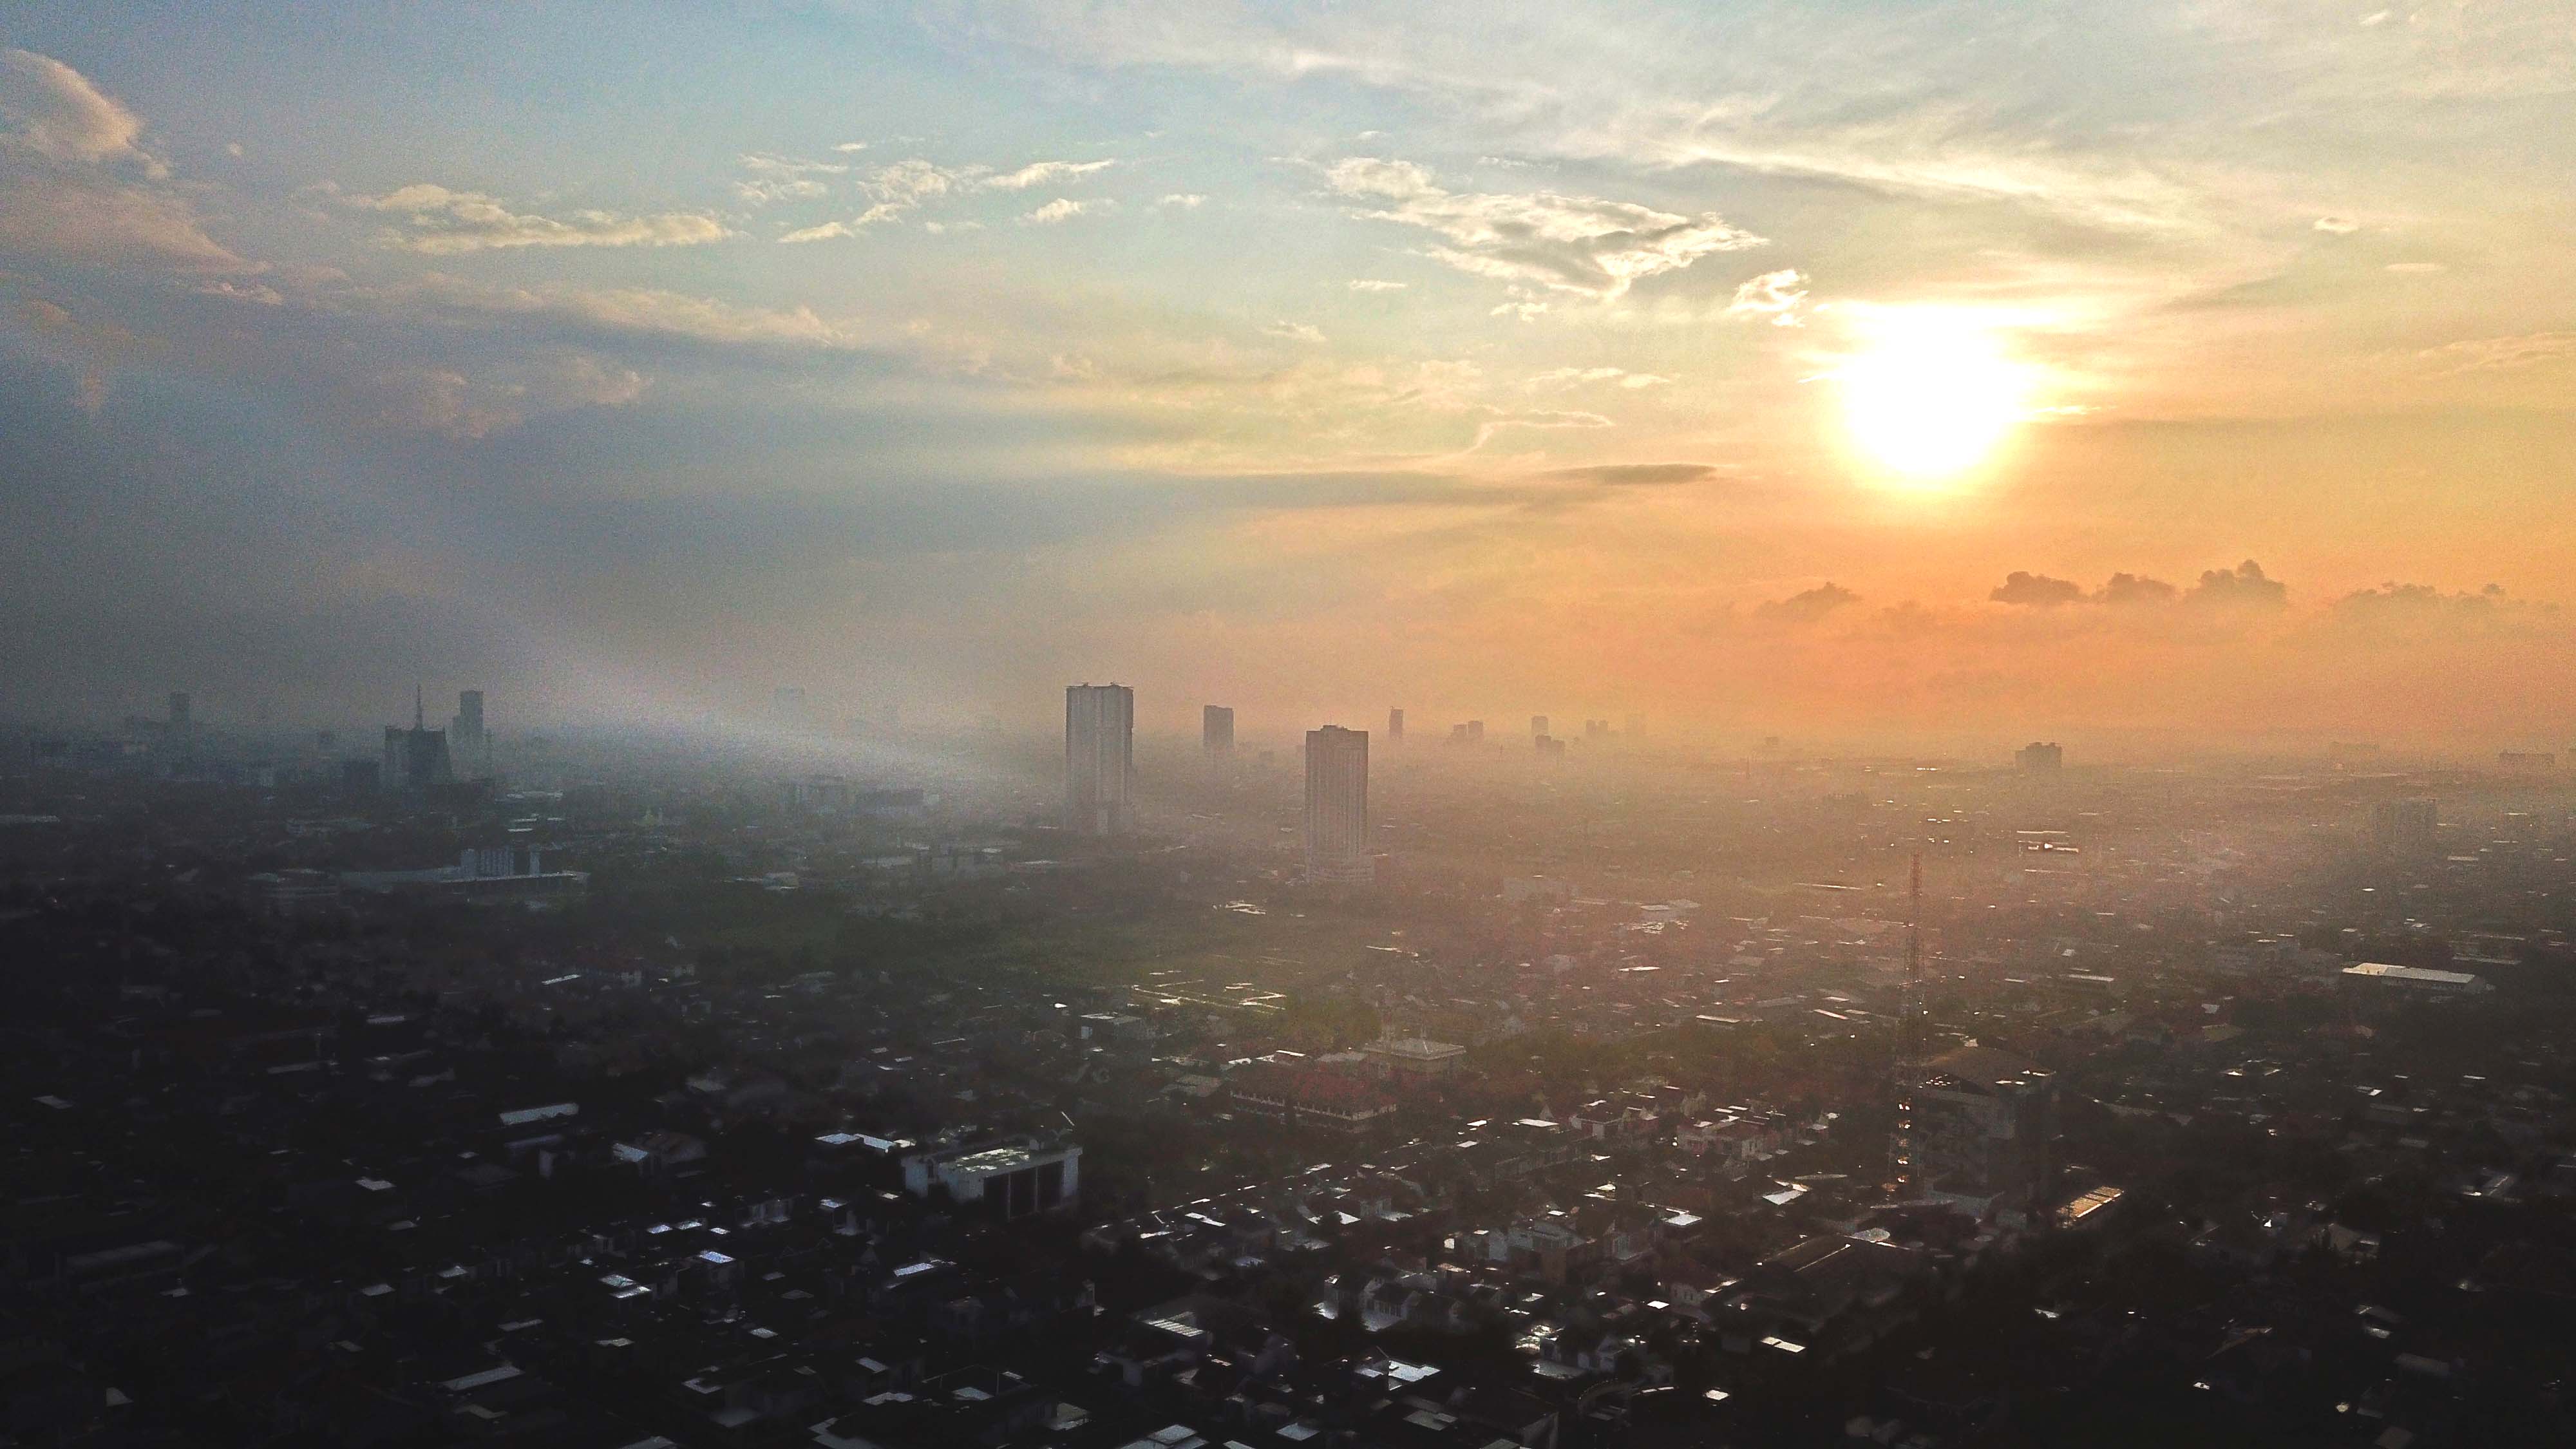 Gawat! Kualitas Udara di Jakarta Pagi Ini Terburuk Ketiga di Dunia, Apa Penyebabnya?